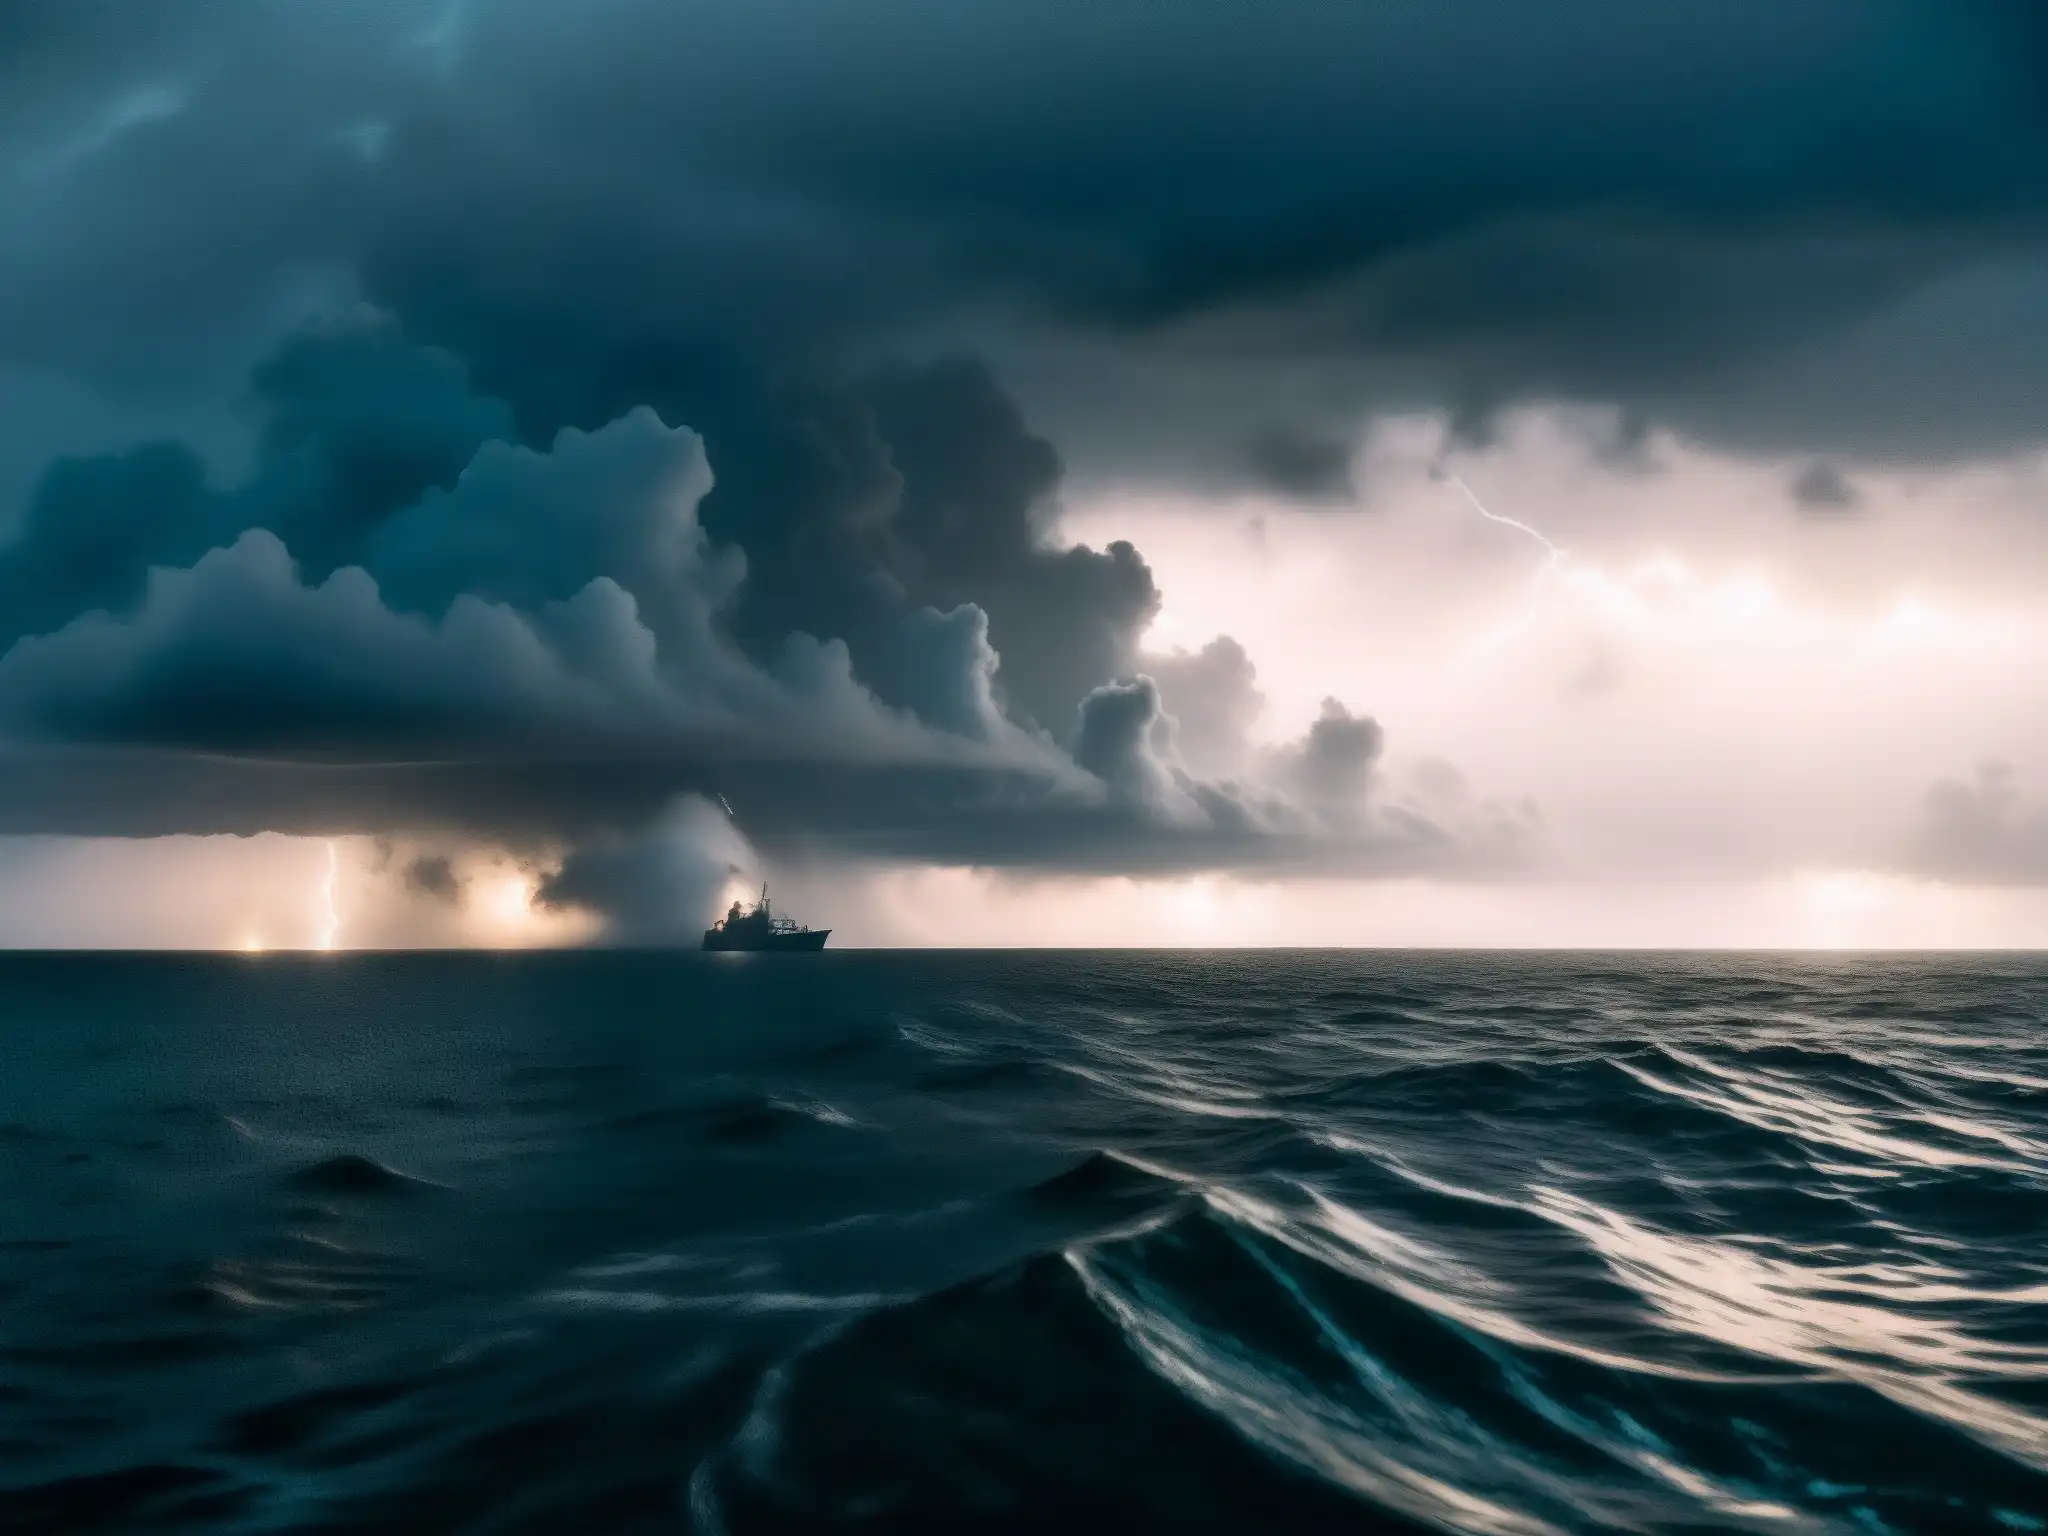 Barco envuelto en la niebla del Triángulo de las Bermudas, capturando la atmósfera de desapariciones misteriosas